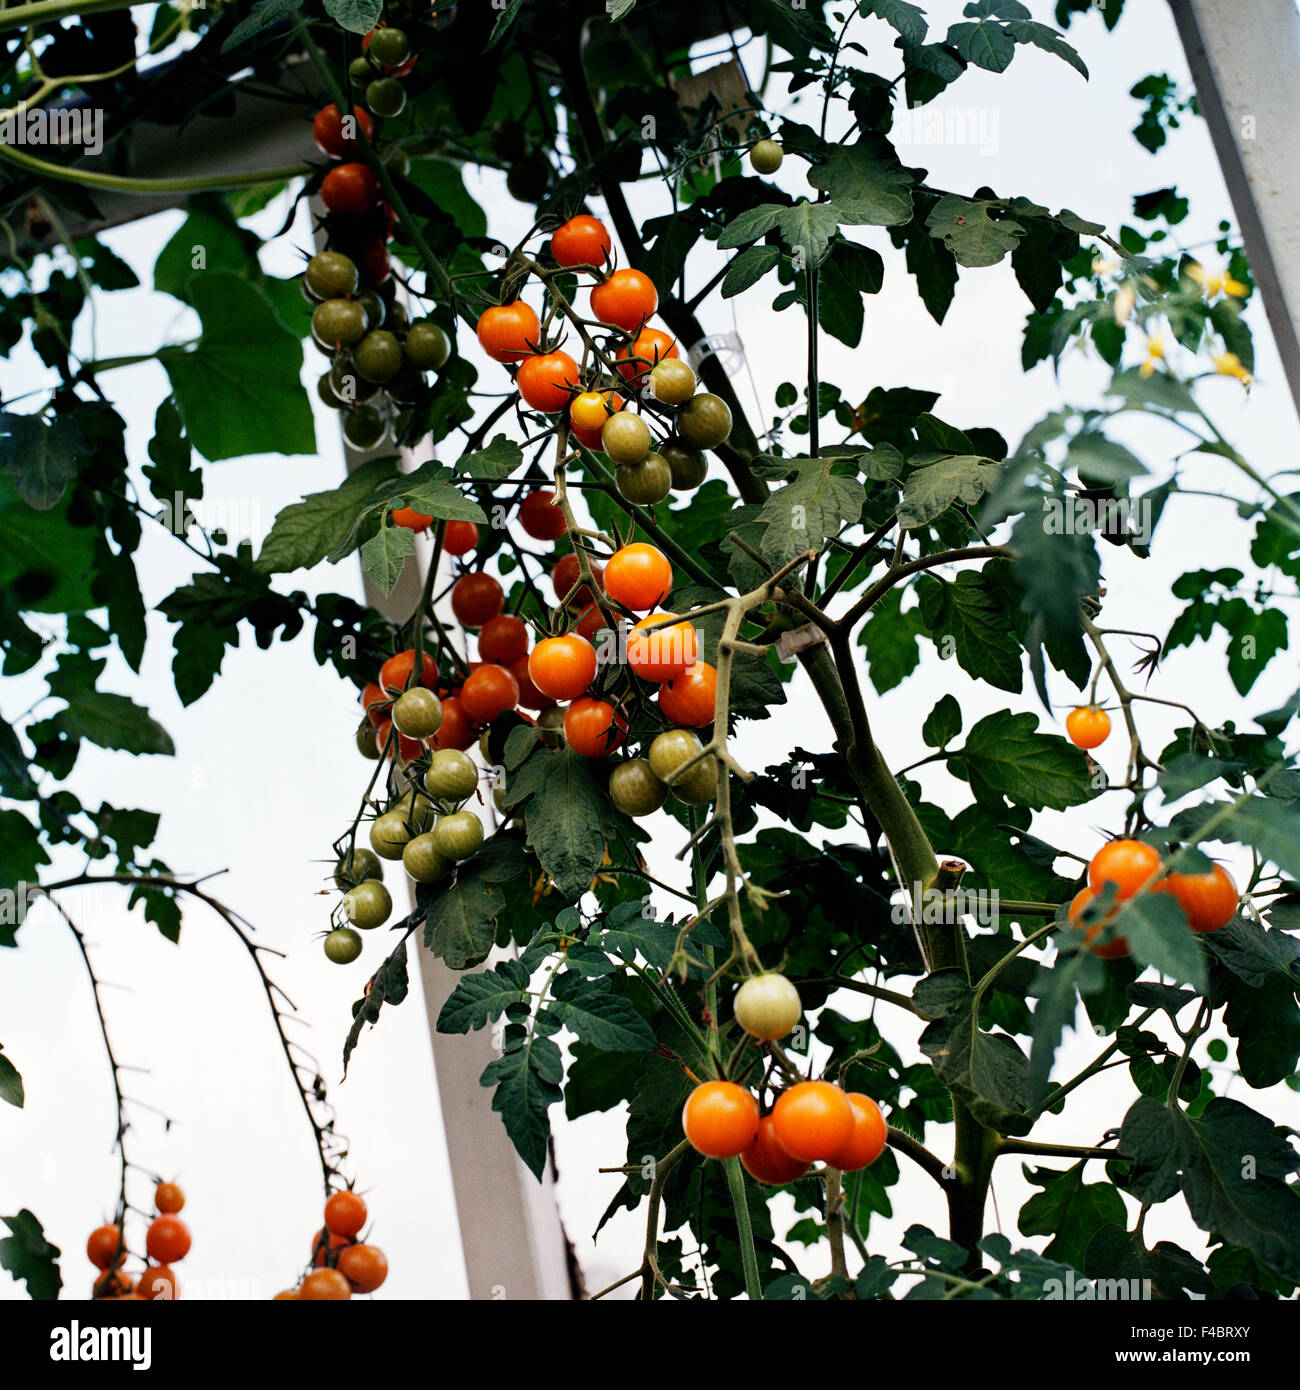 Immagine a colori della frutta e verdura a foglia piazza piante vegetali di pomodoro Foto Stock